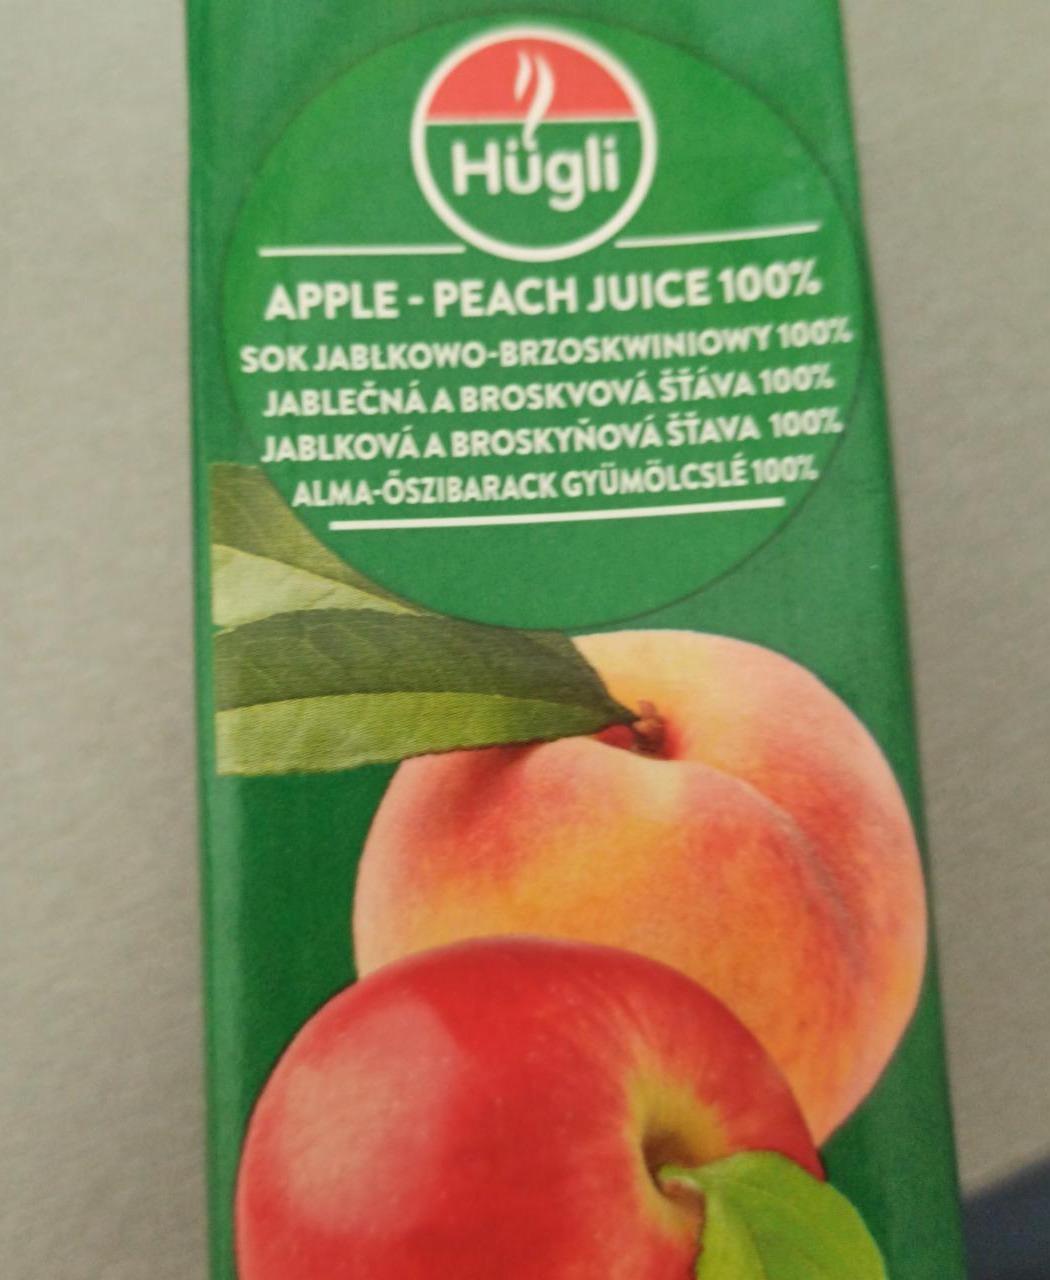 Fotografie - Apple - peach juice 100% Hügli